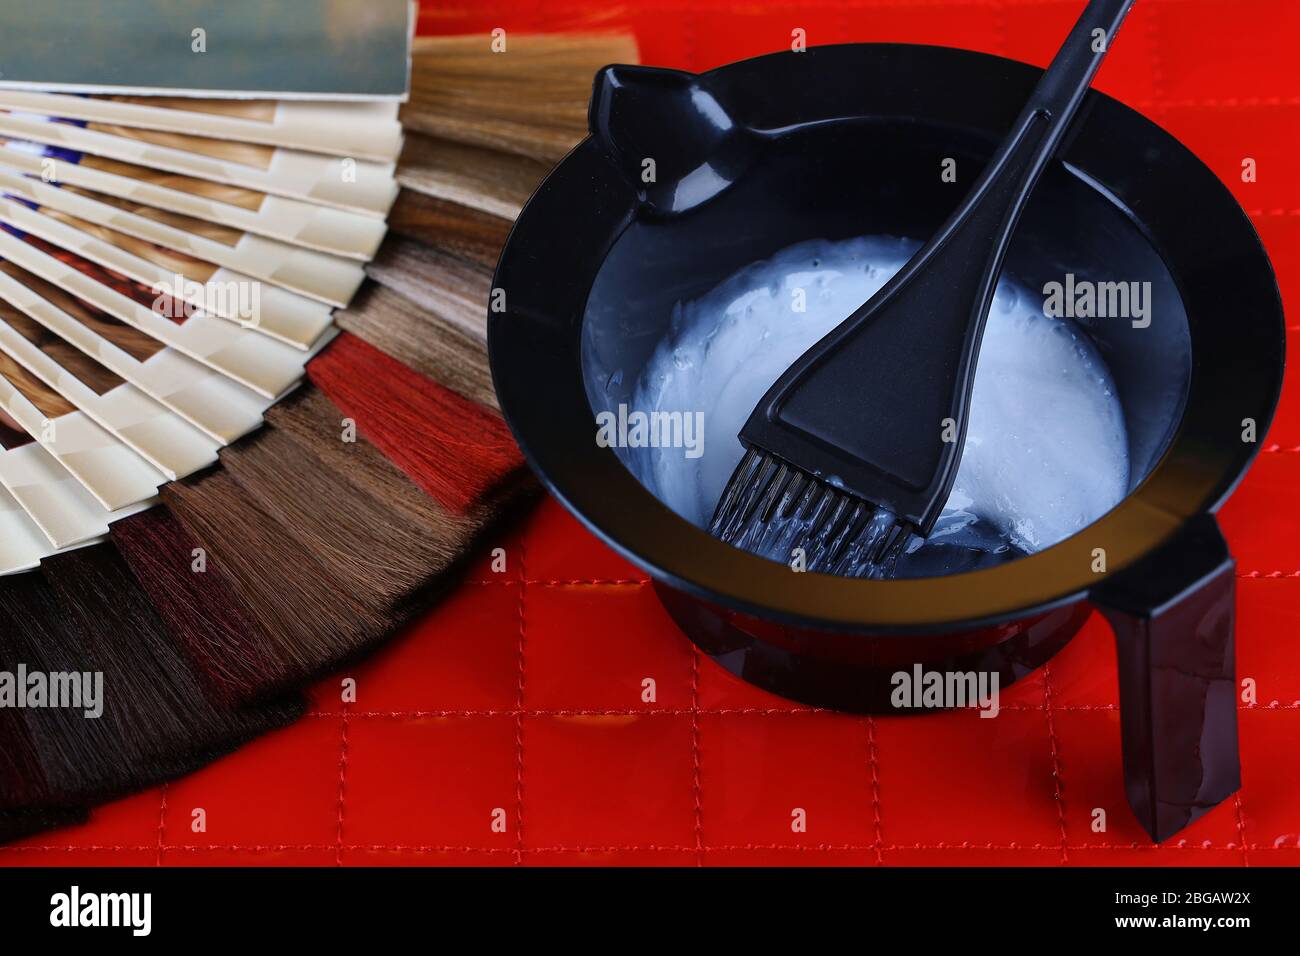 Zusammensetzung mit Haarproben in verschiedenen Farben, Pinsel und Farbe auf dem Tisch Hintergrund Stockfoto